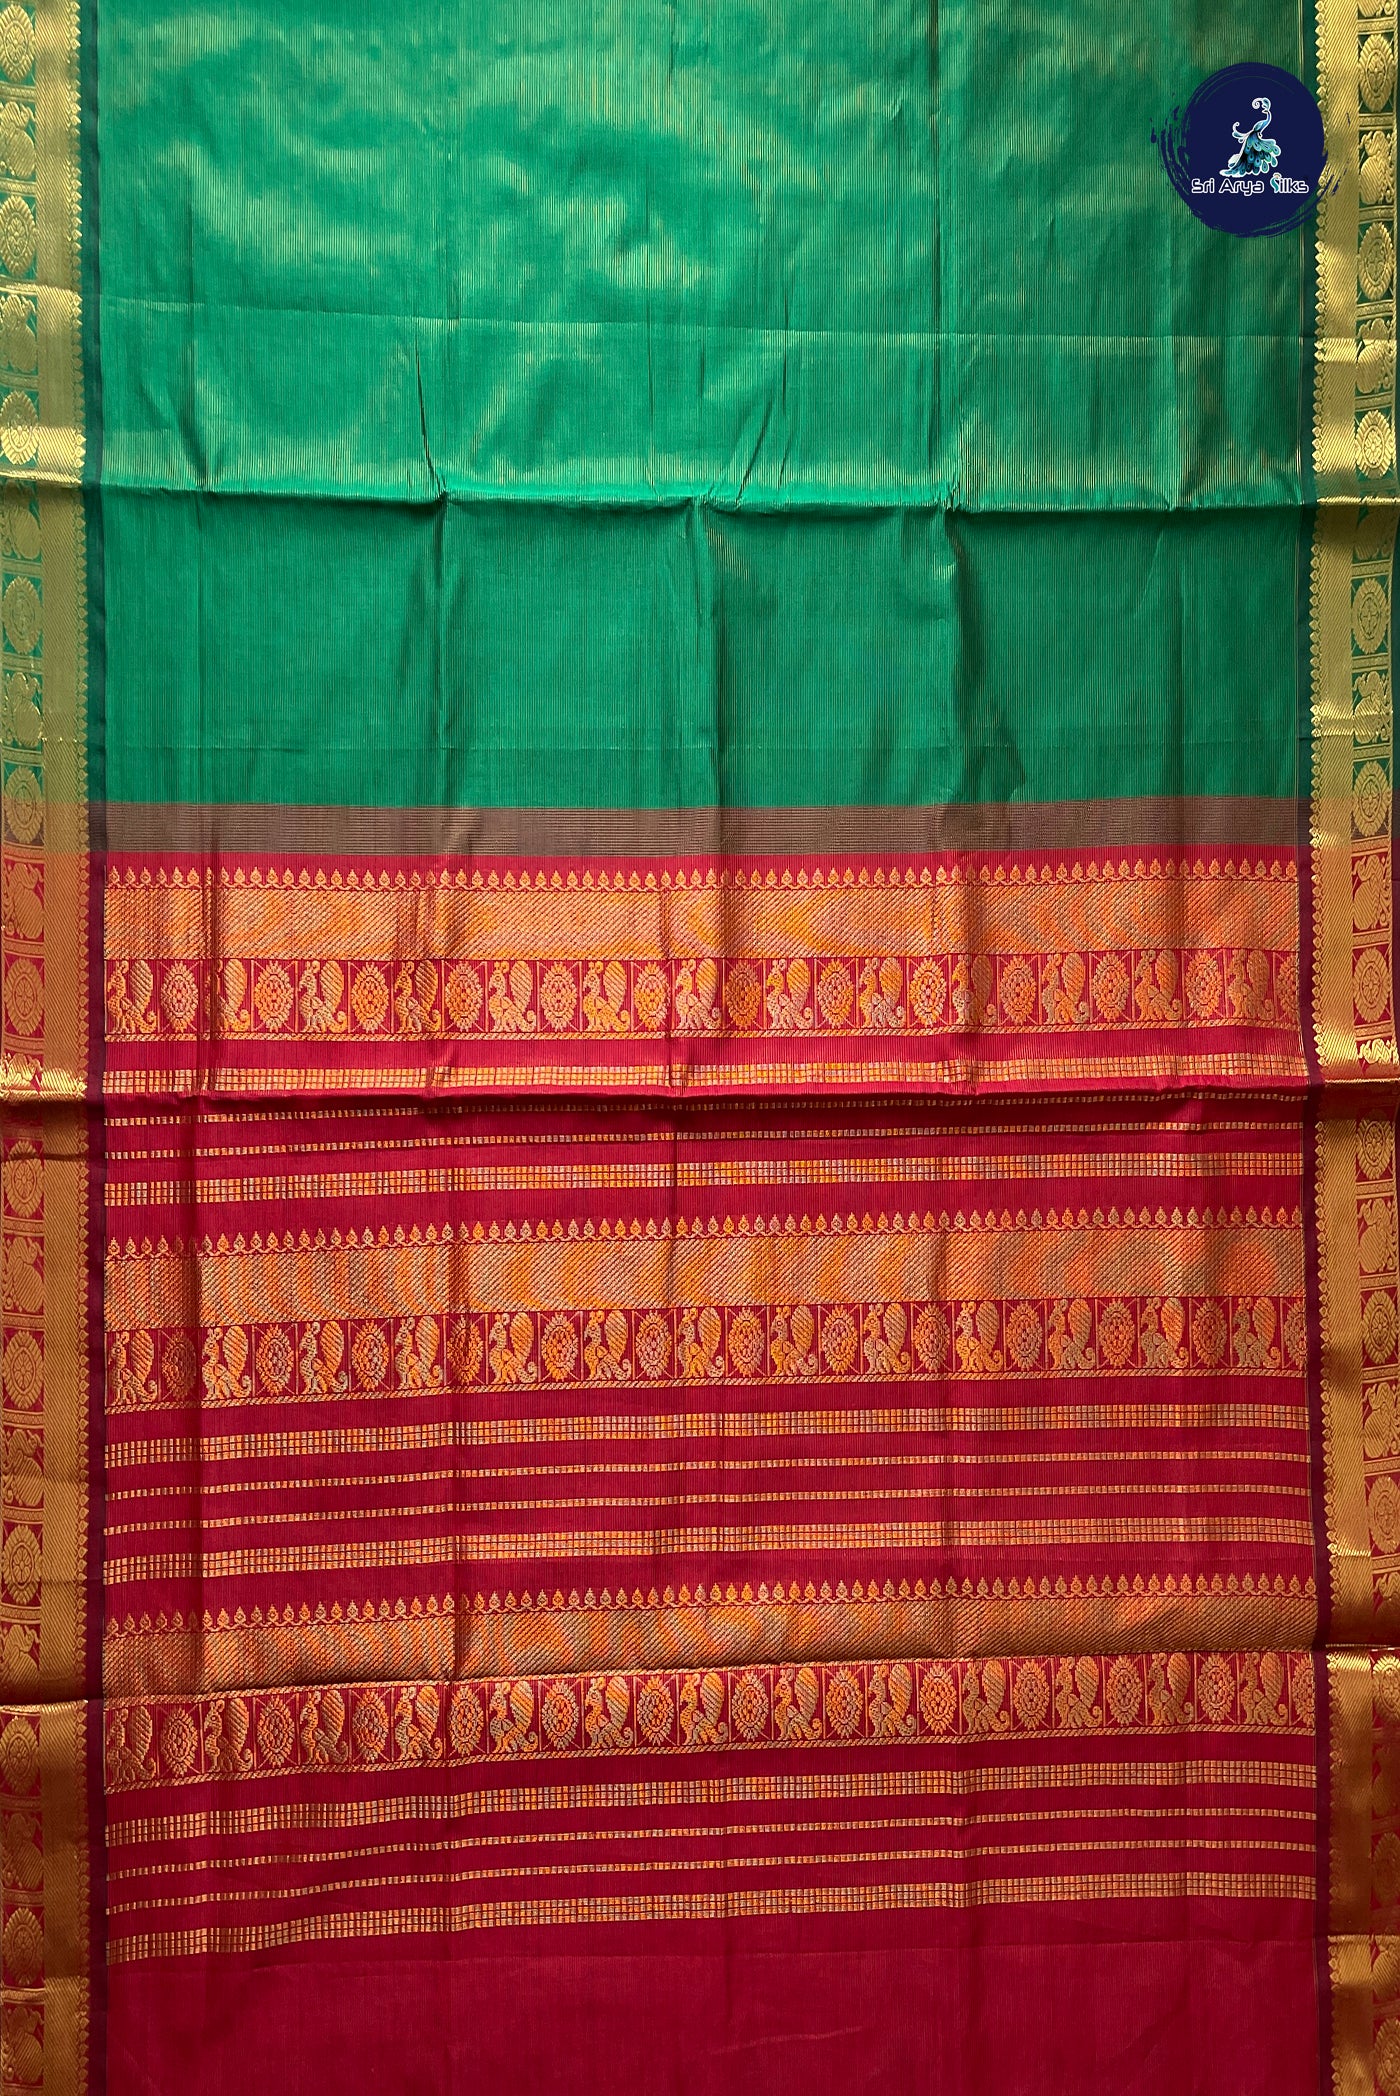 Green Vaira Oosi Silk Cotton Saree With Vaira Oosi Pattern